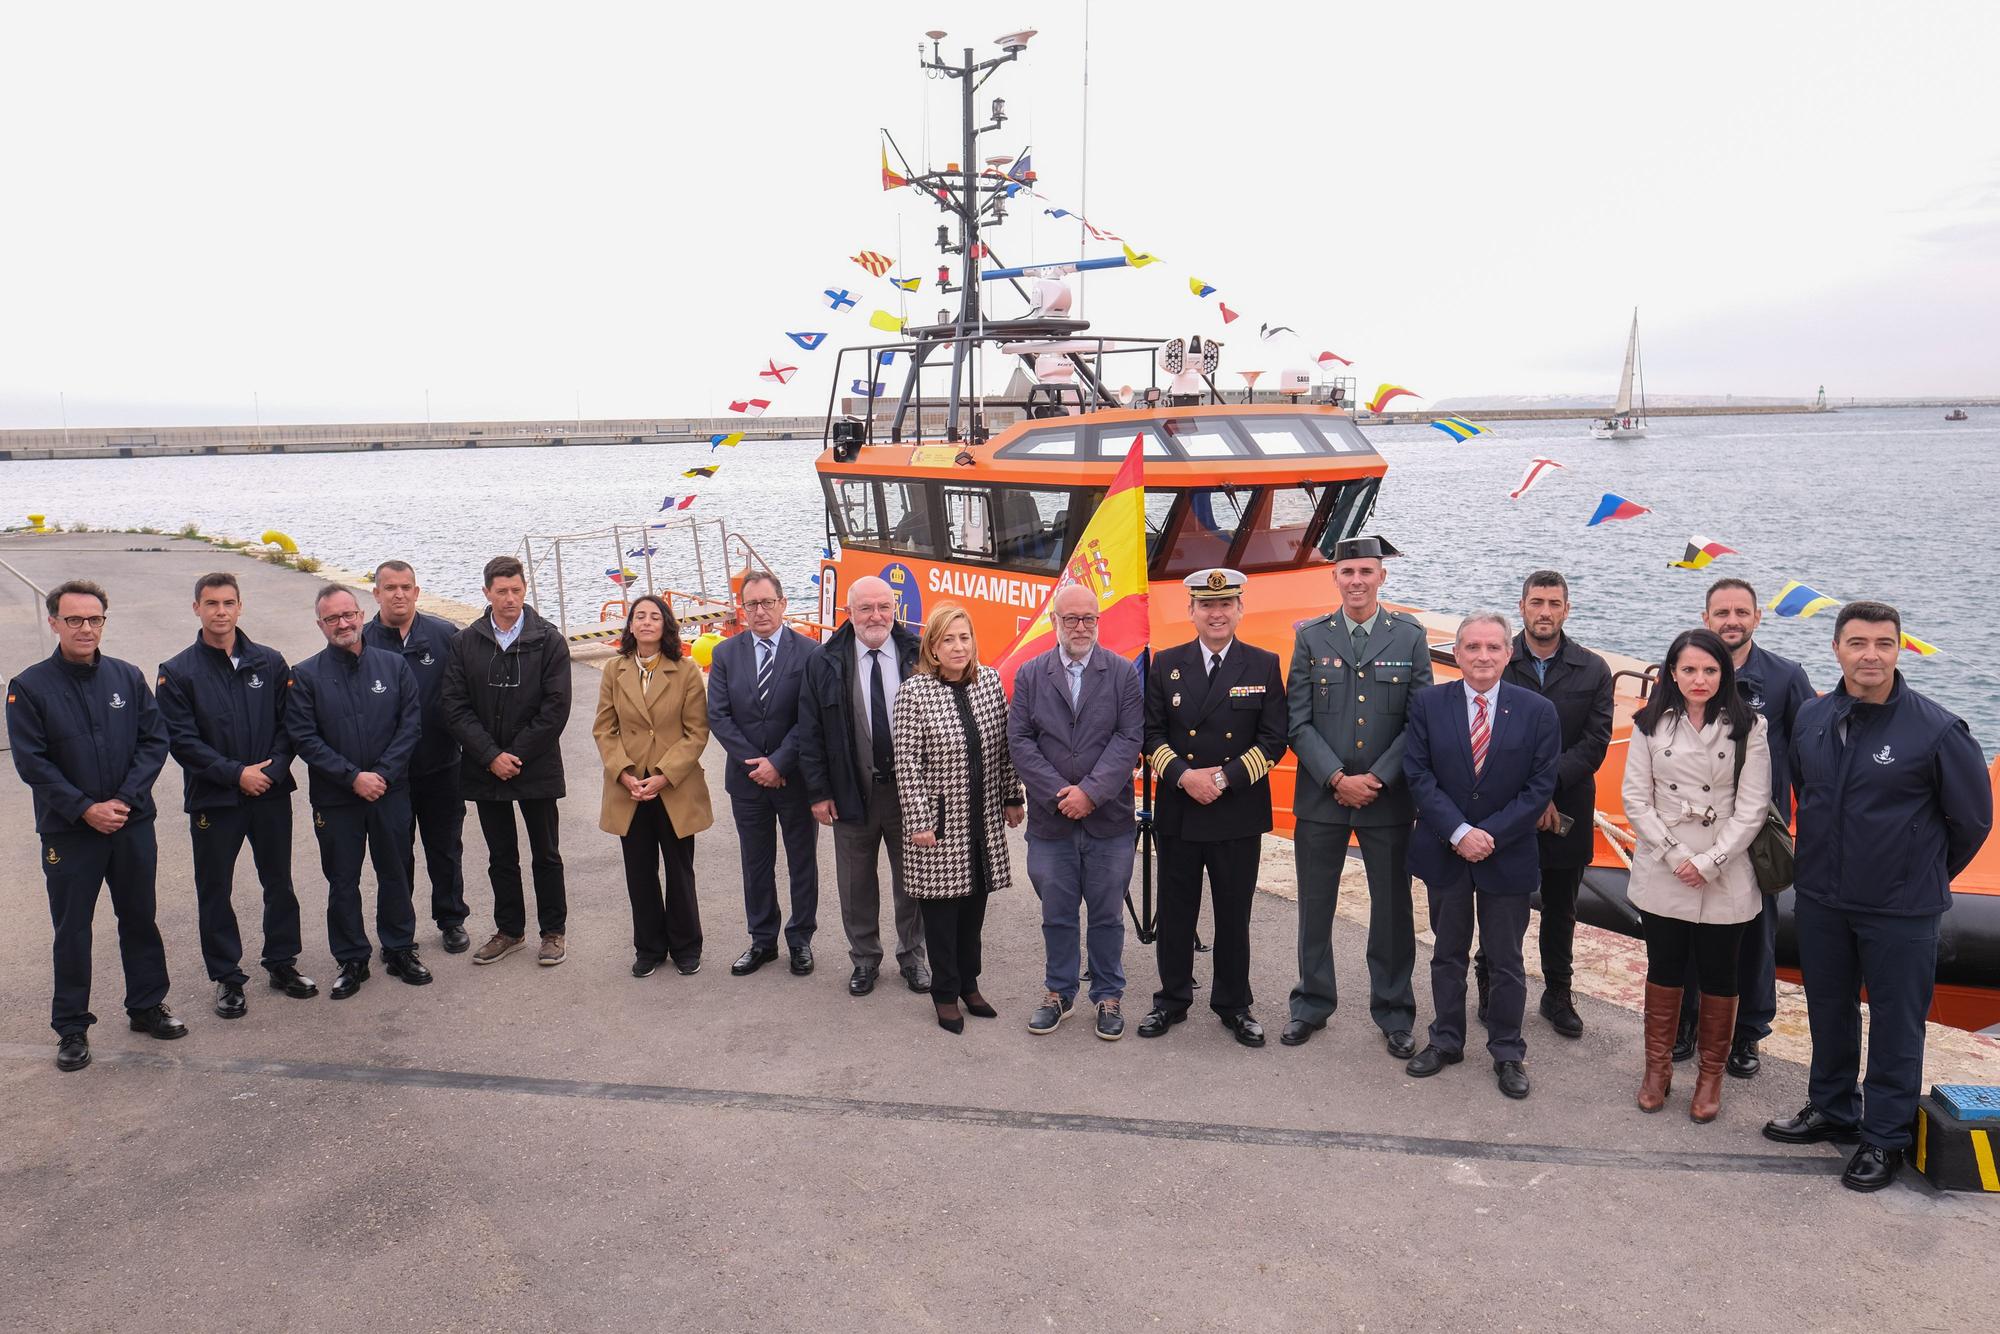 Salvamento Marítimo estrena nuevo barco en su base de Alicante